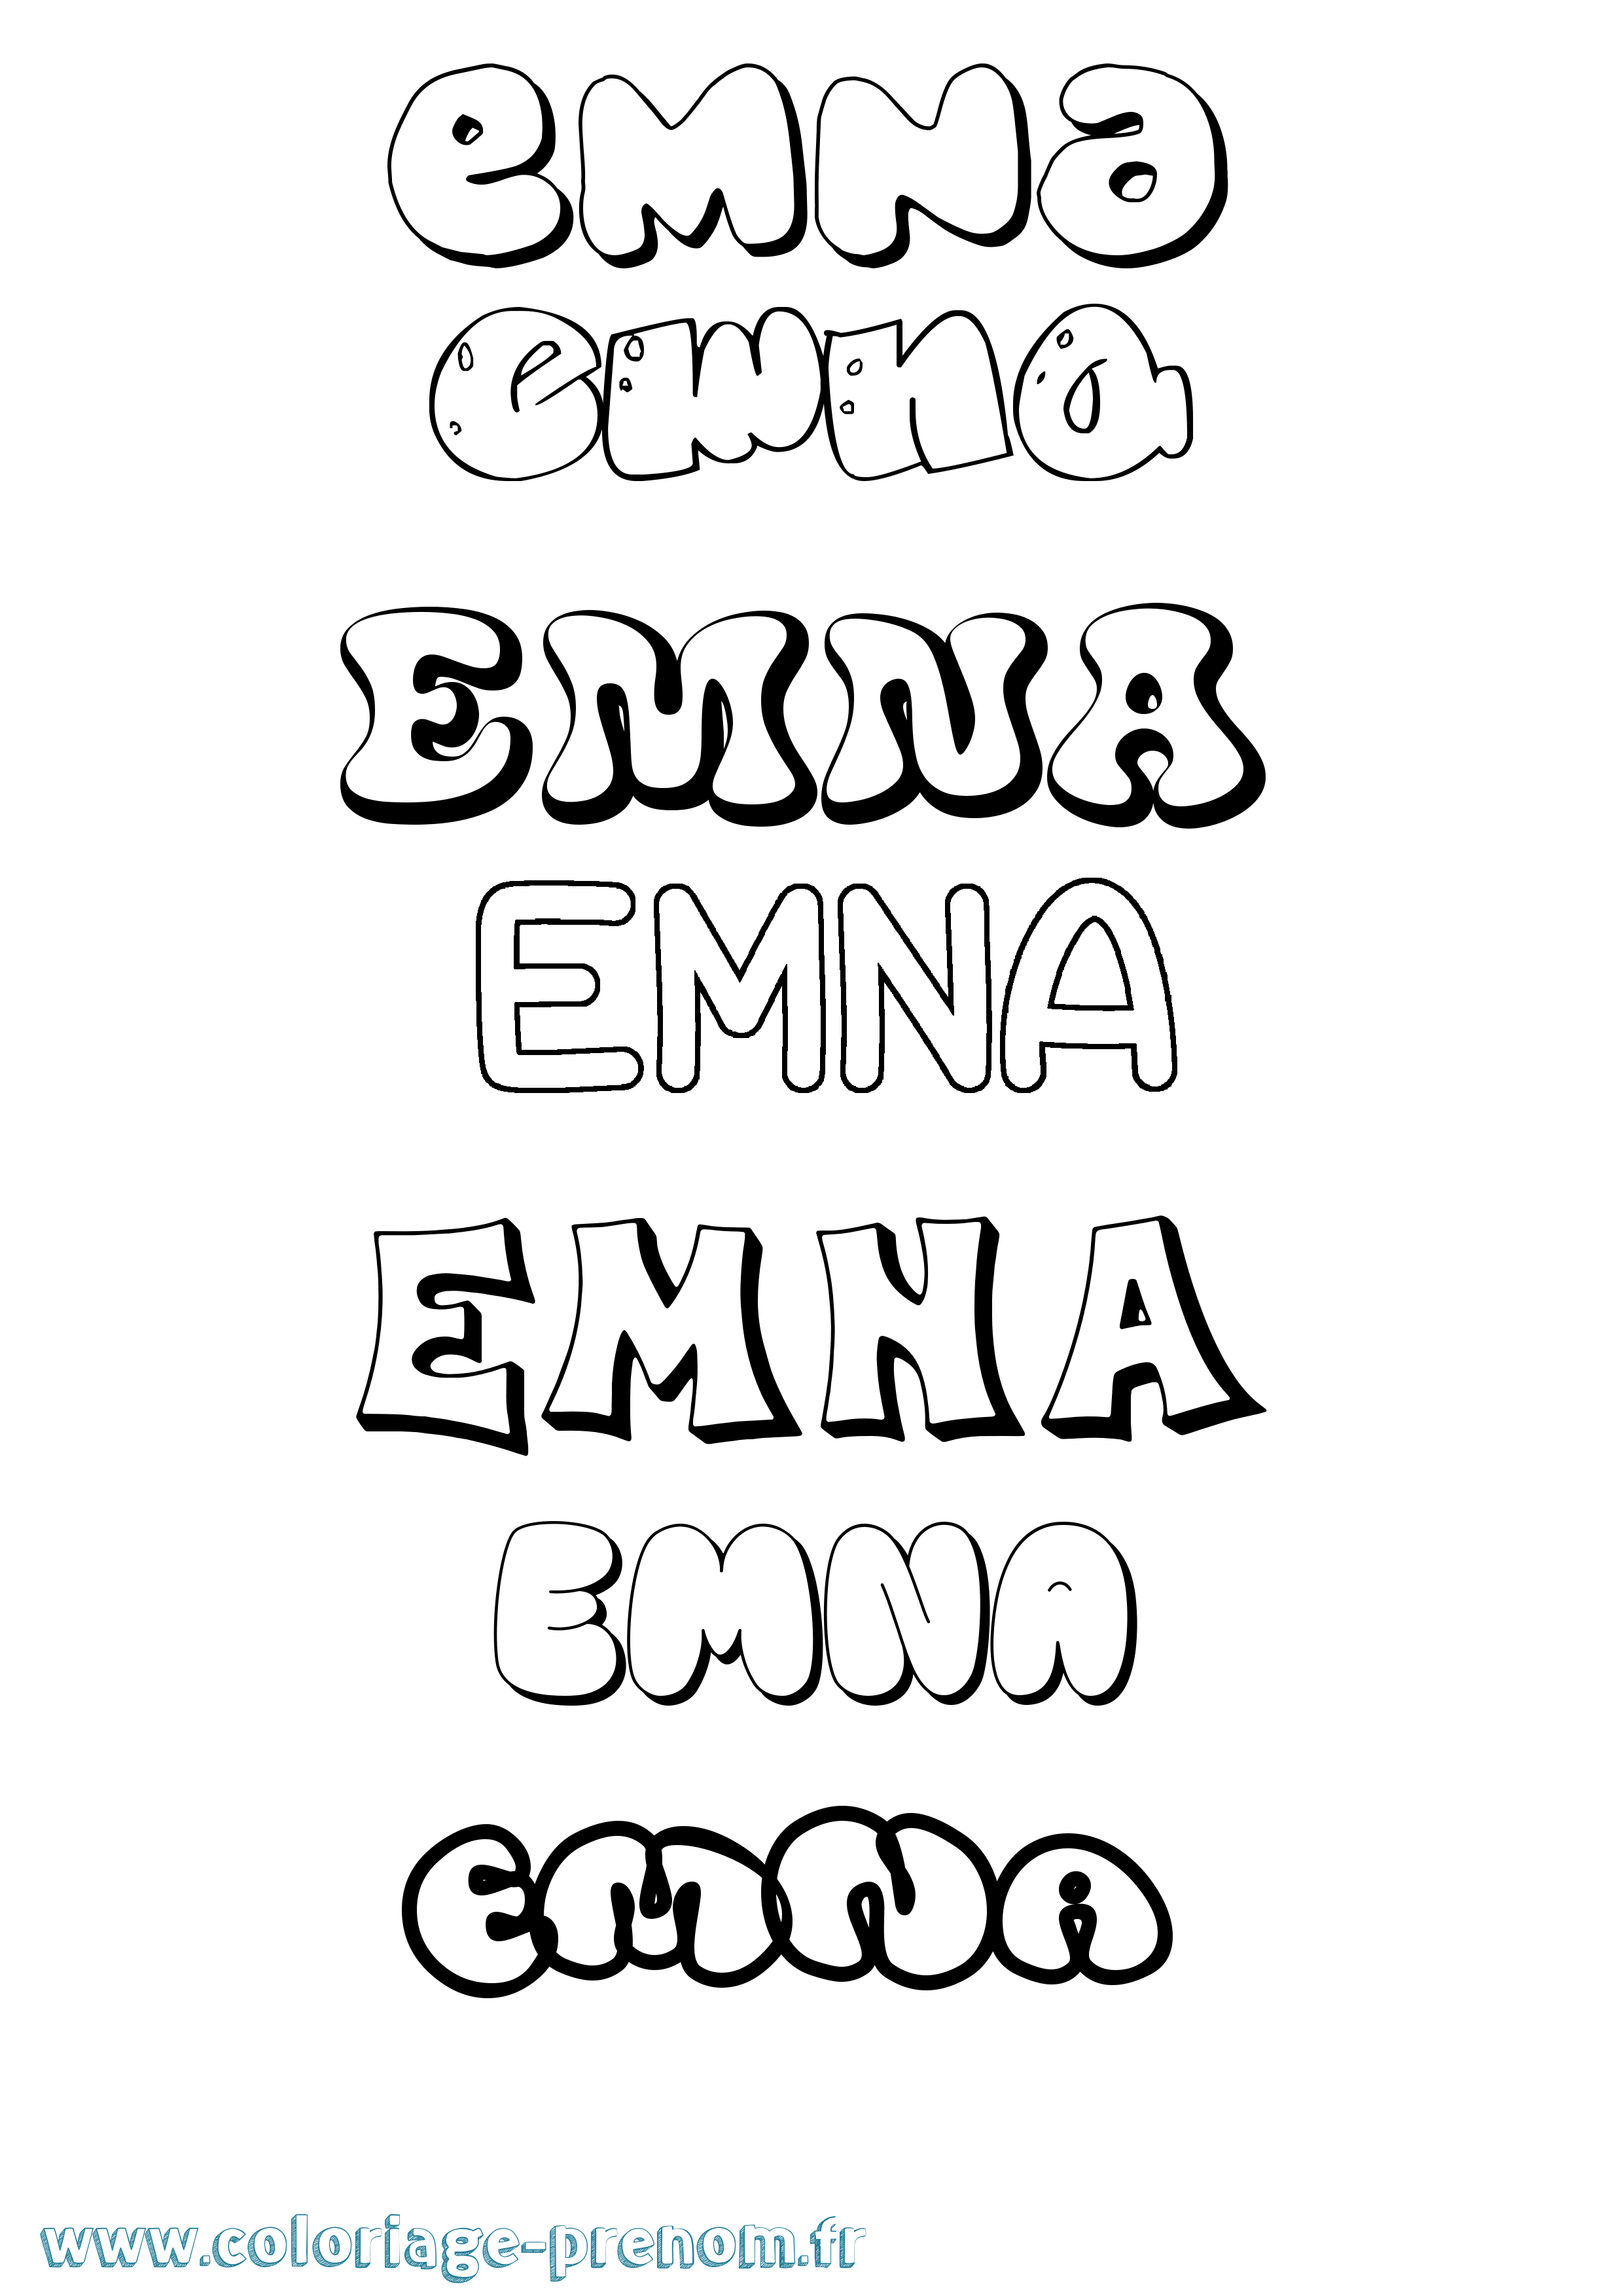 Coloriage prénom Emna